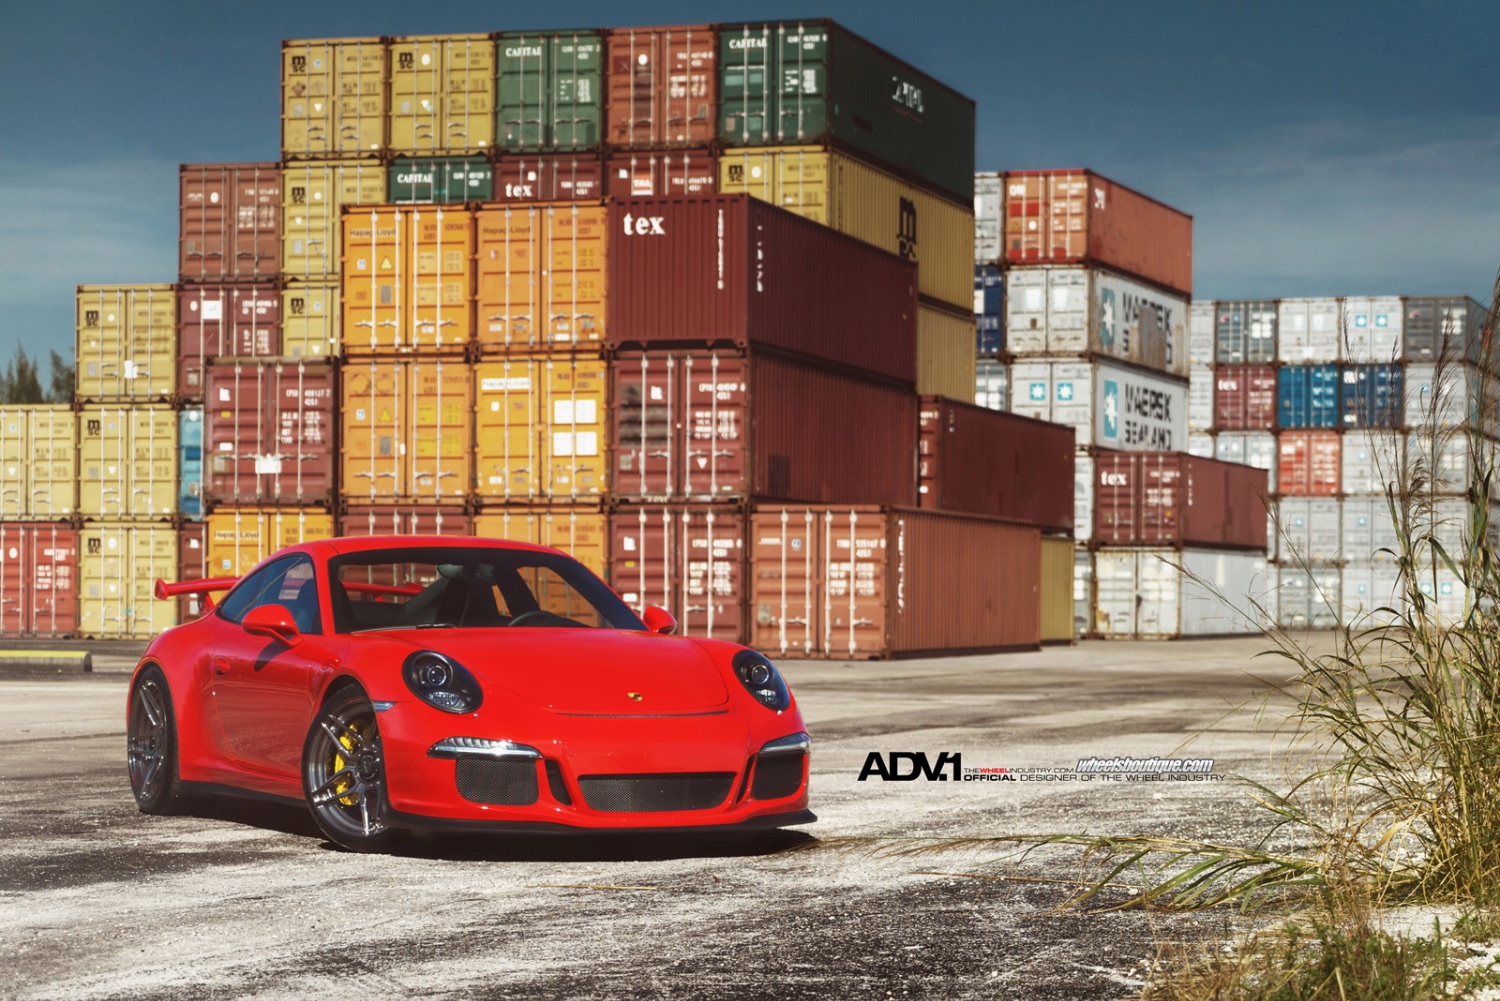 ADV1-Wheels-Porsche-911-GT3-ADV005MV2CS-9